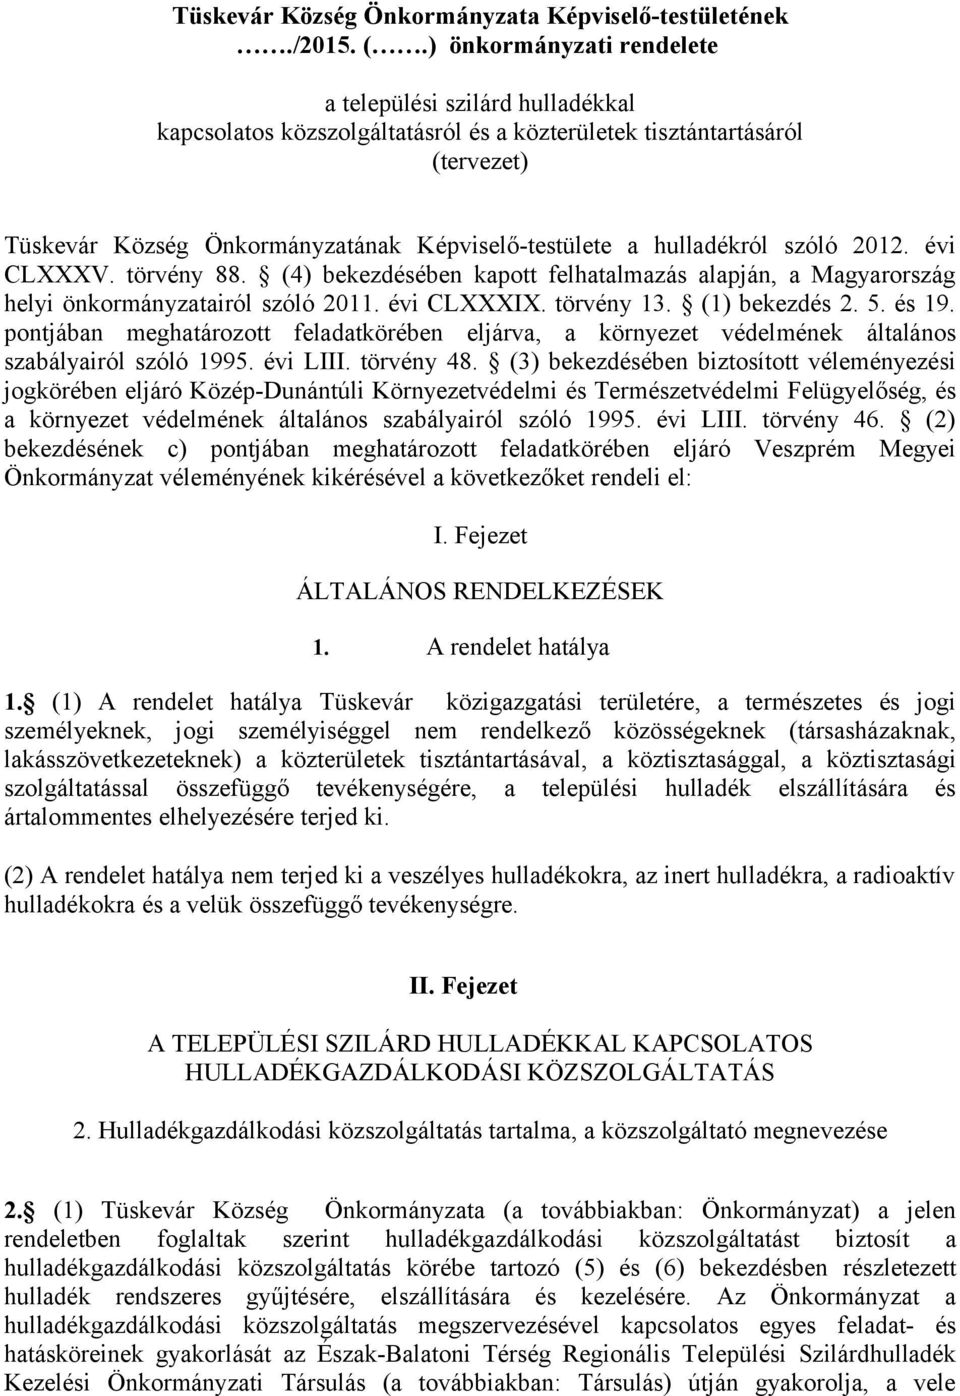 hulladékról szóló 2012. évi CLXXXV. törvény 88. (4) bekezdésében kapott felhatalmazás alapján, a Magyarország helyi önkormányzatairól szóló 2011. évi CLXXXIX. törvény 13. (1) bekezdés 2. 5. és 19.